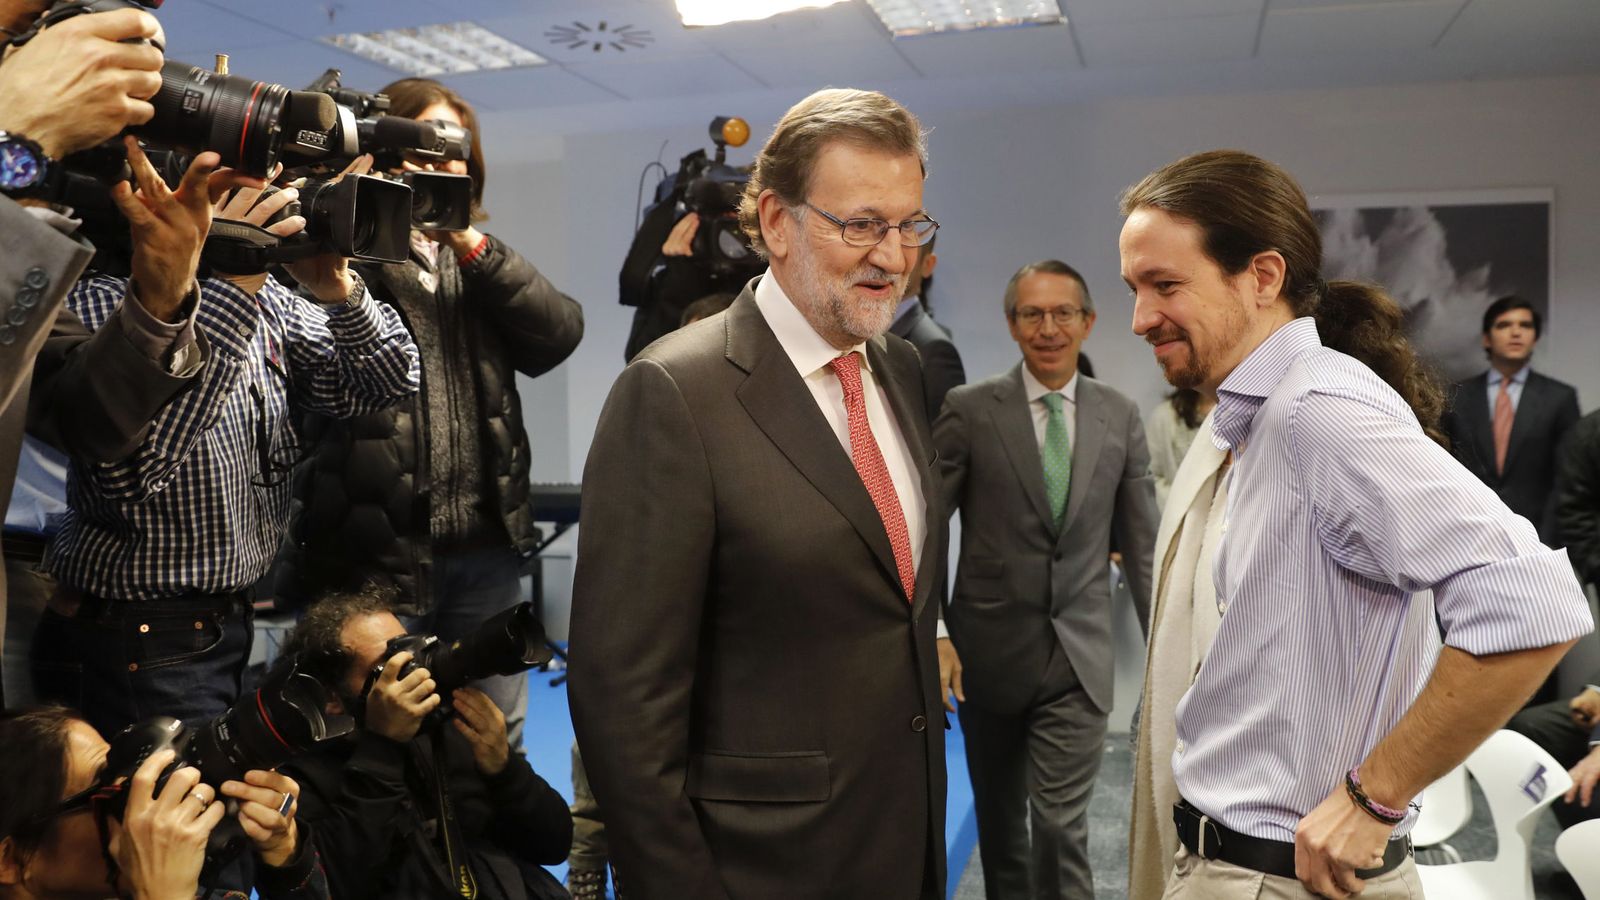 Foto: Mariano Rajoy y Pablo Iglesias, durante la inauguración del museo de la agencia EFE, el pasado 15 de marzo en Madrid. (EFE)